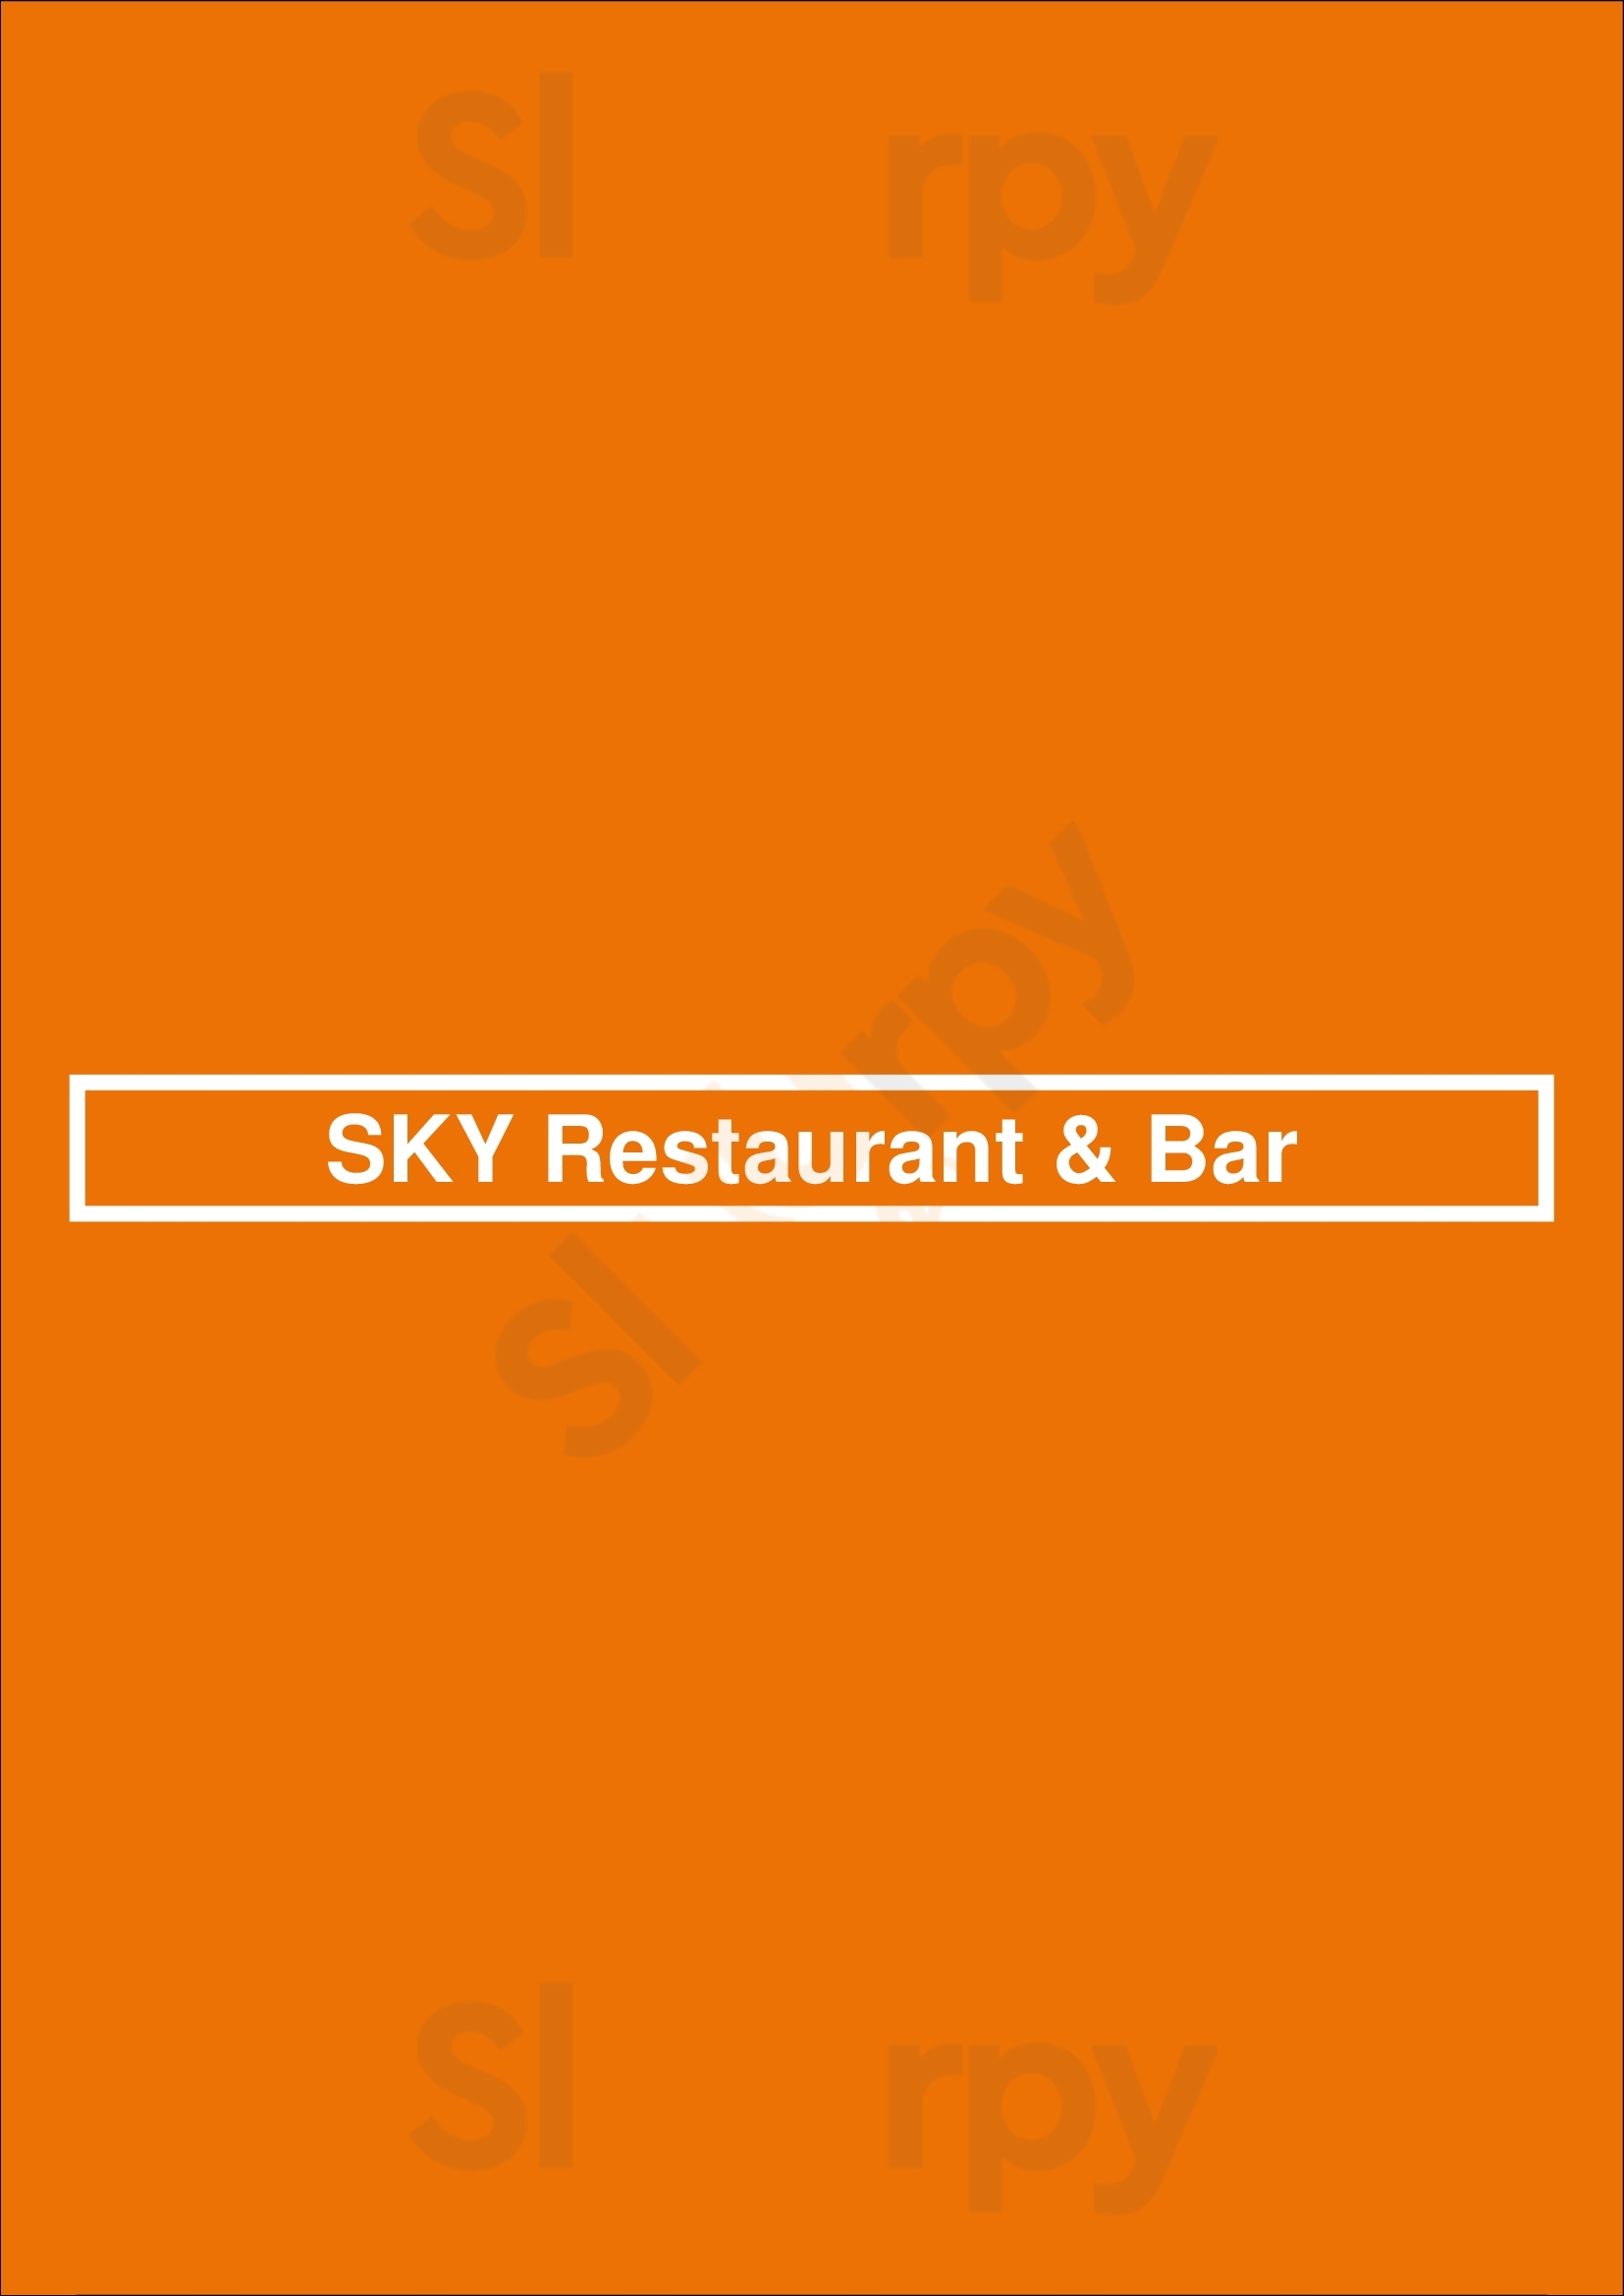 Sky Restaurant & Bar Reykjavik Menu - 1